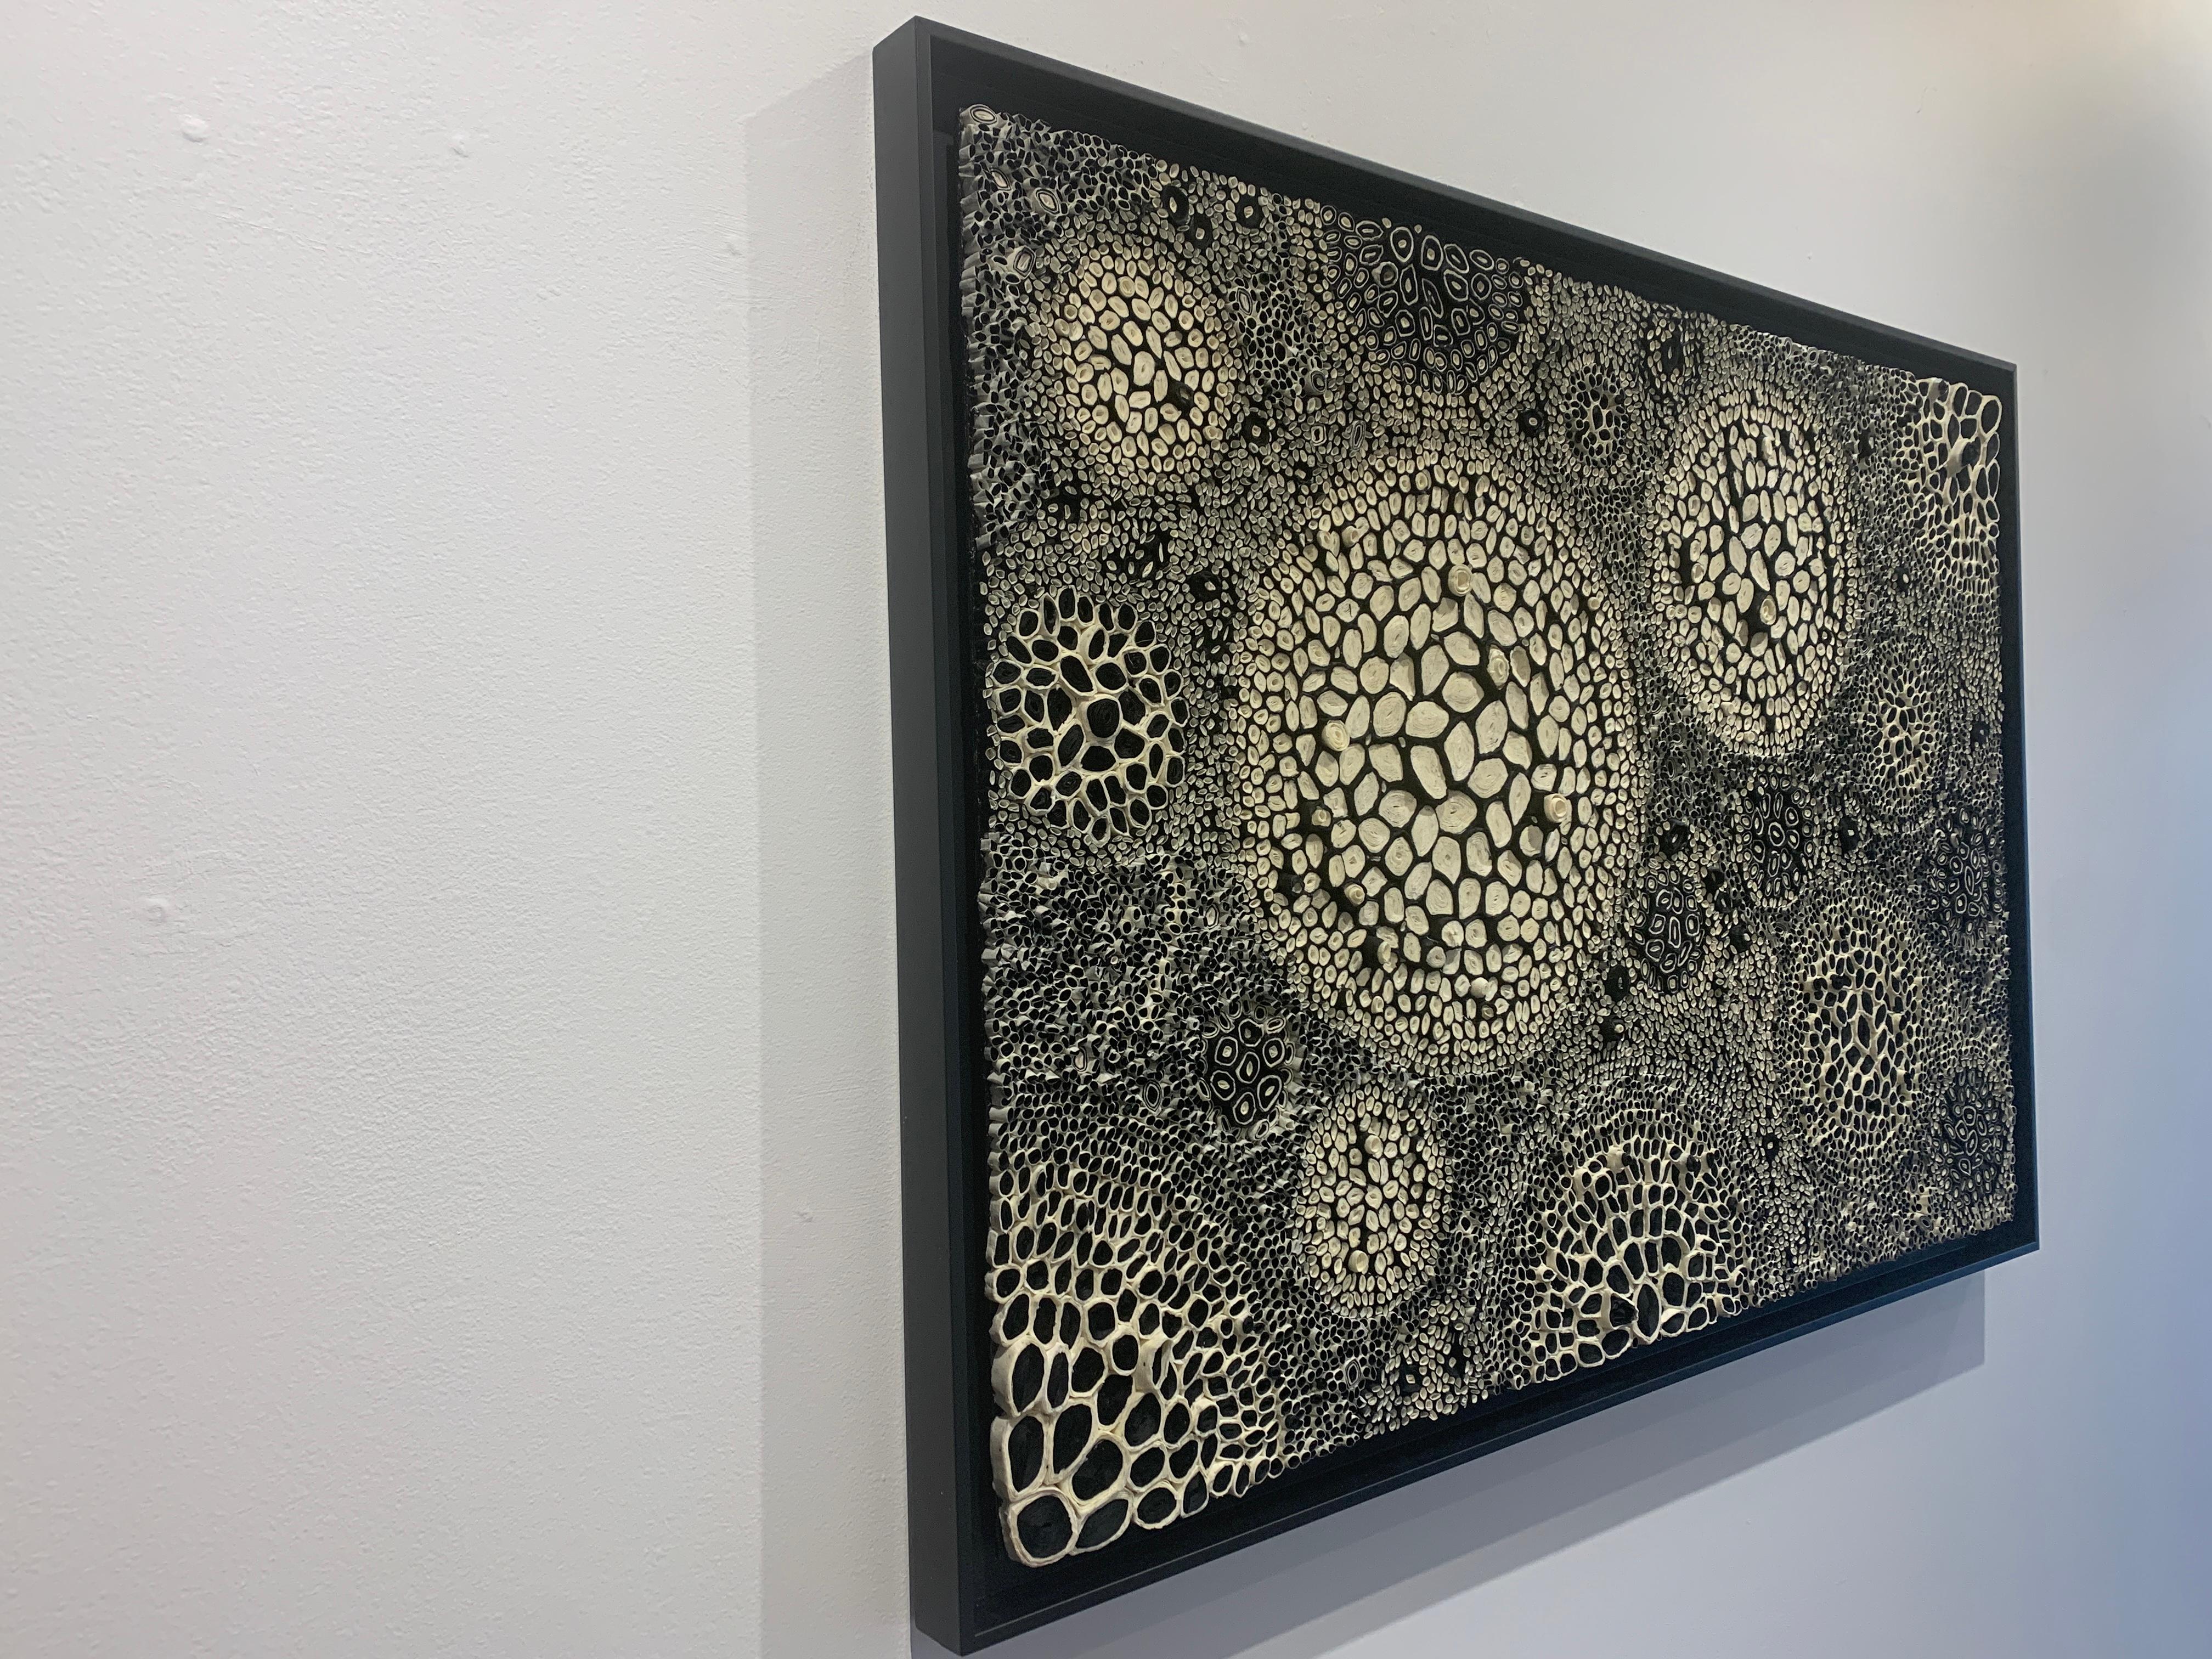 Cette pièce de papier dimensionnel noir et blanc est l'œuvre de l'artiste de techniques mixtes Amy Genser. Ces œuvres murales texturées, uniques en leur genre et encadrées, incarnent le mouvement et les processus. Elle manipule magistralement le